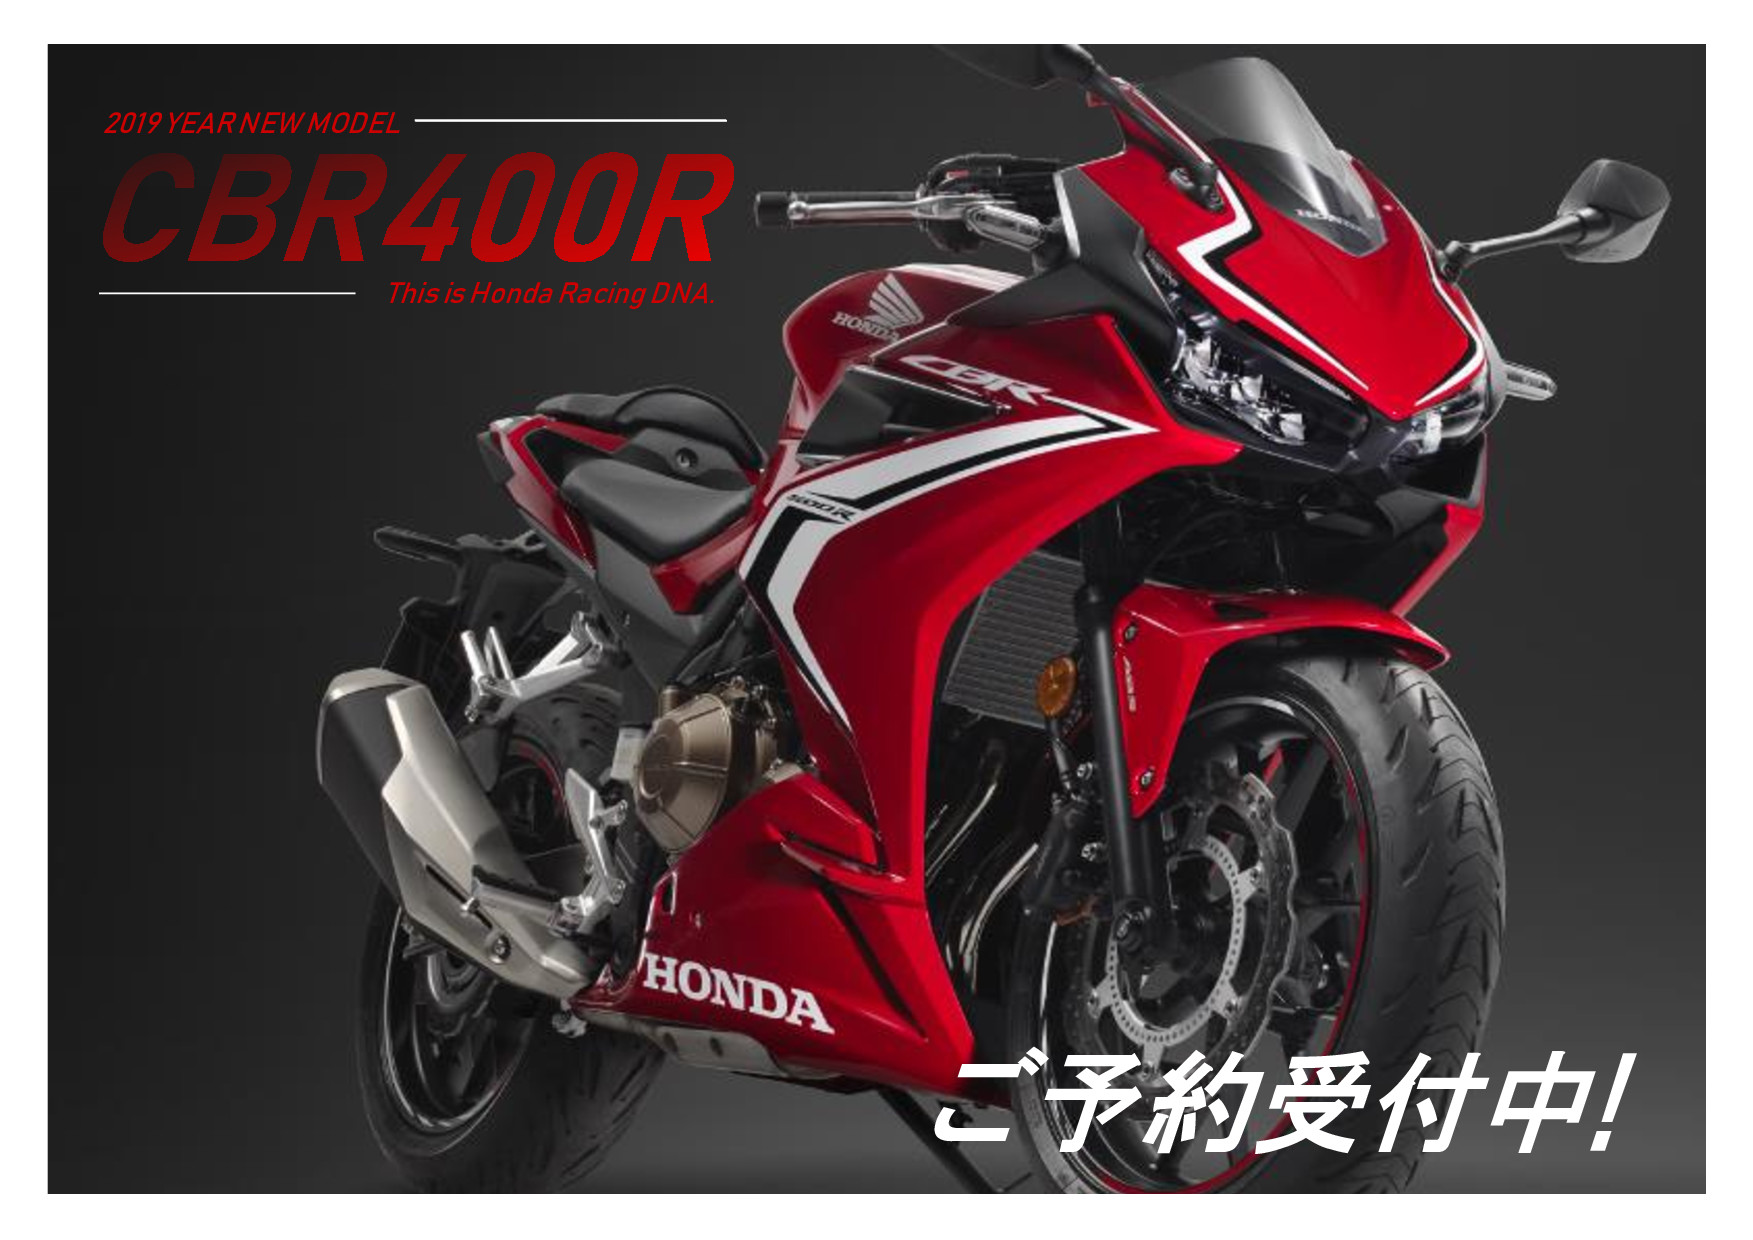 予約受付中 Cbr400r 19モデル 最新情報 ホンダドリーム神奈川 バイクの専門店 新車 中古車をお探しならホンダドリーム神奈川へ